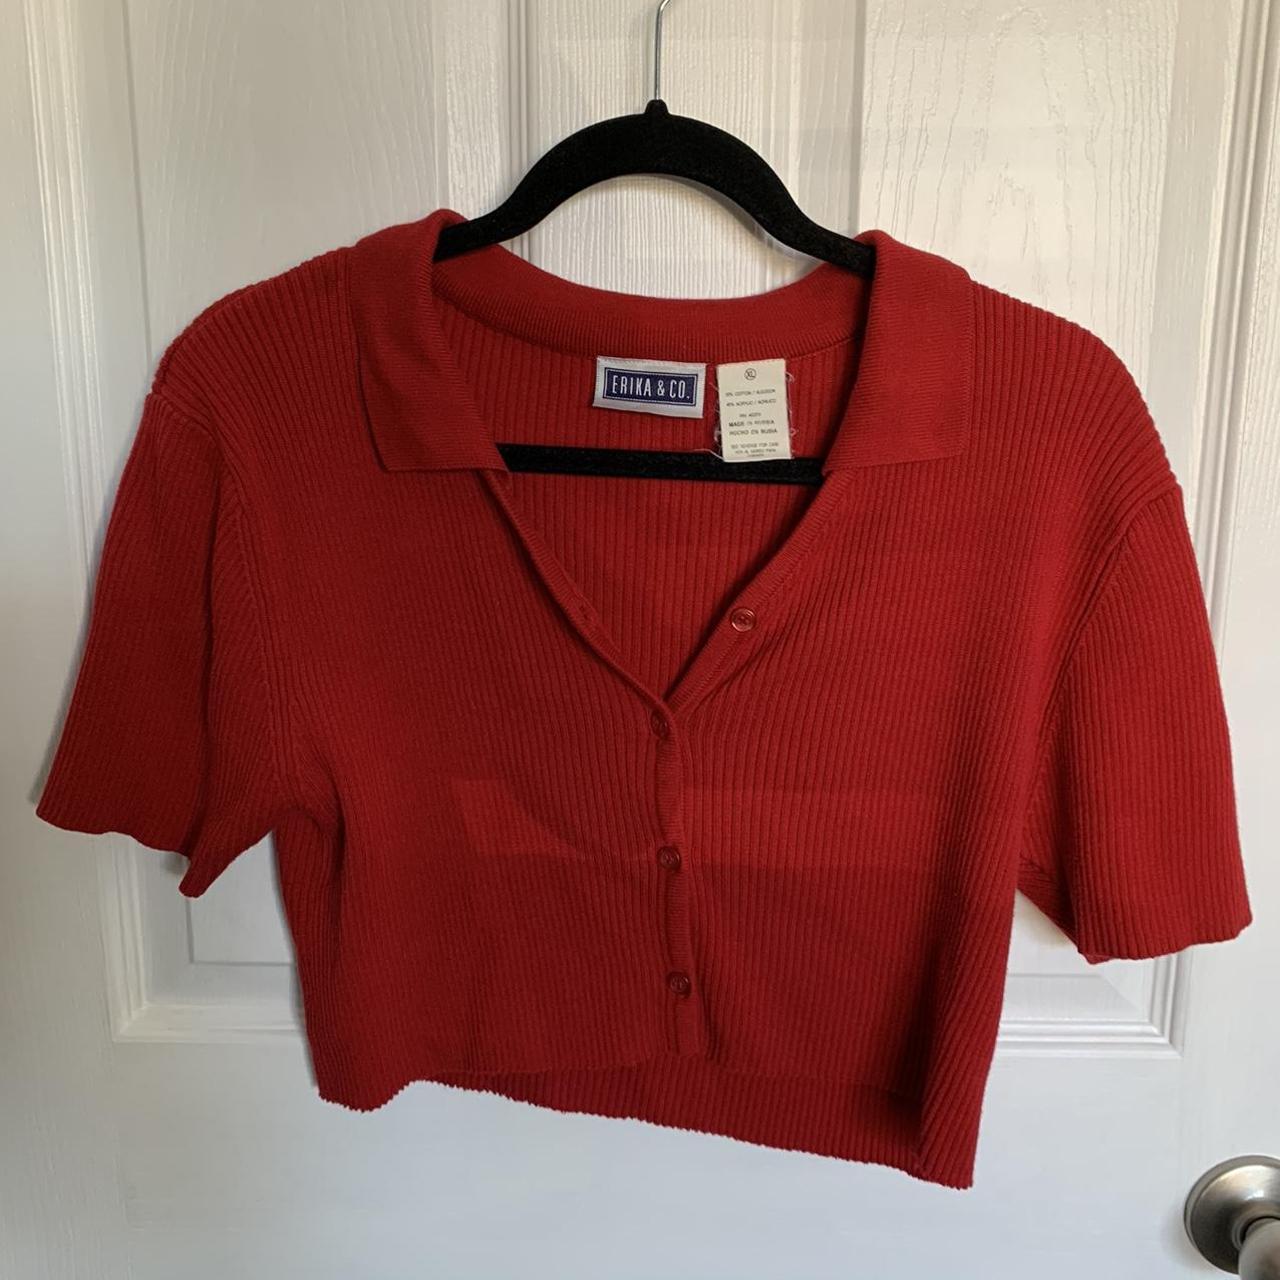 Erika & Co. Women's Red Shirt | Depop